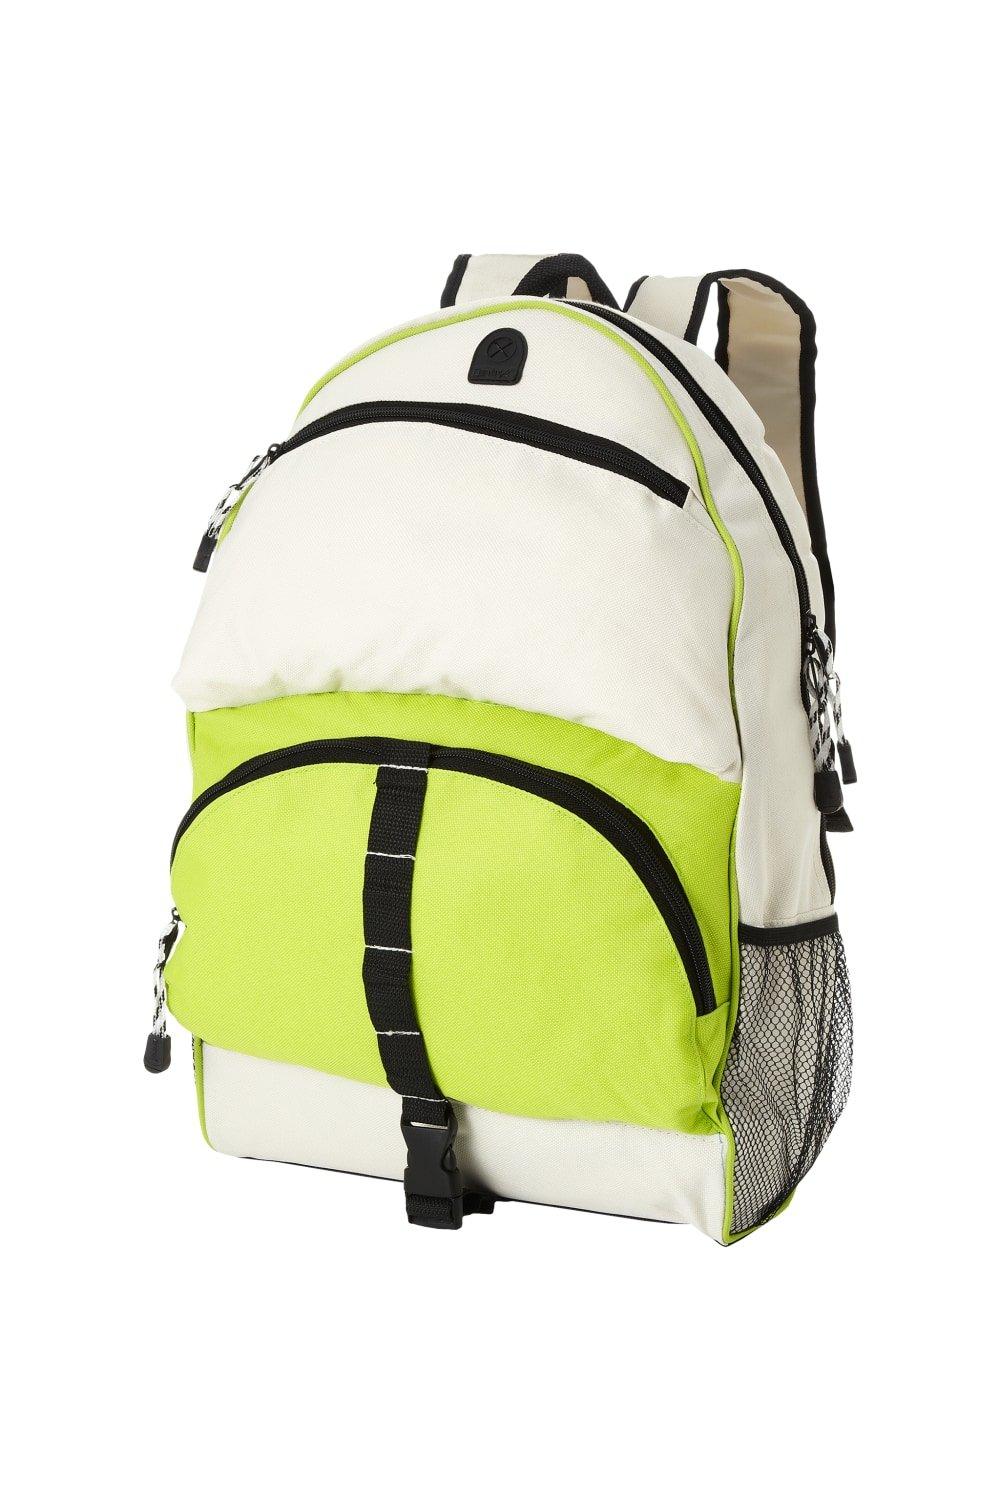 Юта Рюкзак Bullet, зеленый водонепроницаемый и износостойкий рюкзак из ткани оксфорд с двумя боковыми сетчатыми карманами